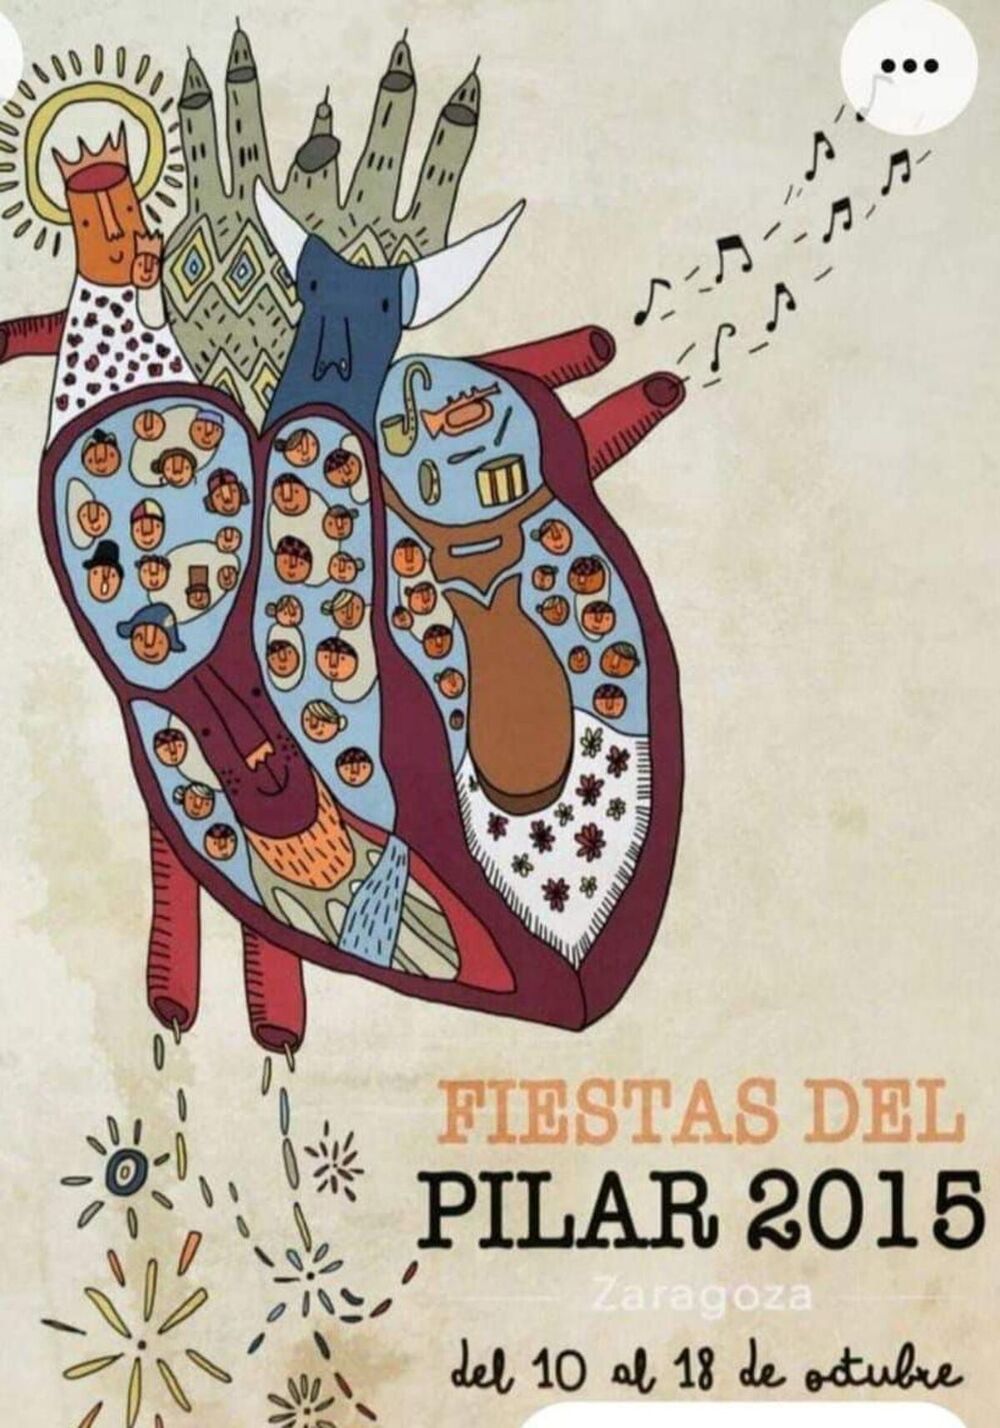 Cartel de las Fiestas del Pilar 2015 de Zaragoza.